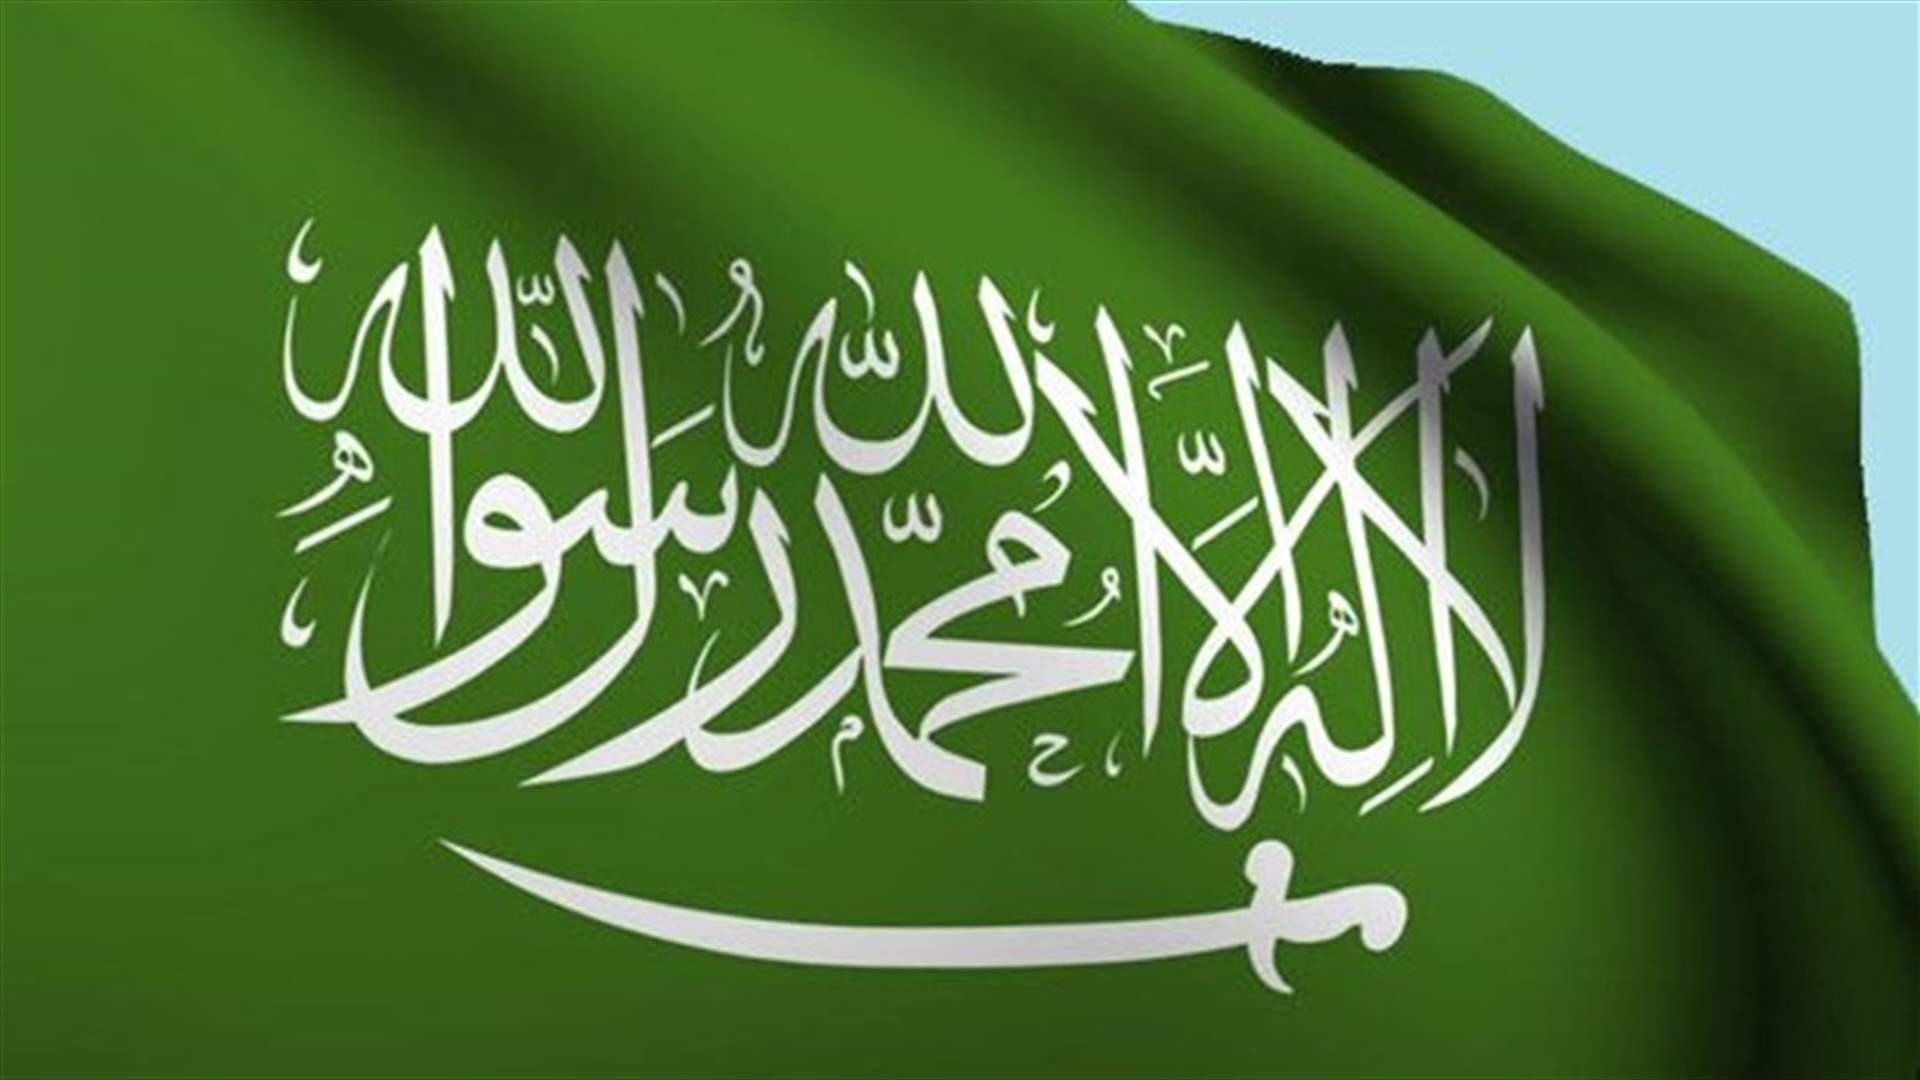 السعودية تعفي رئيس المراسم الملكية من منصبه